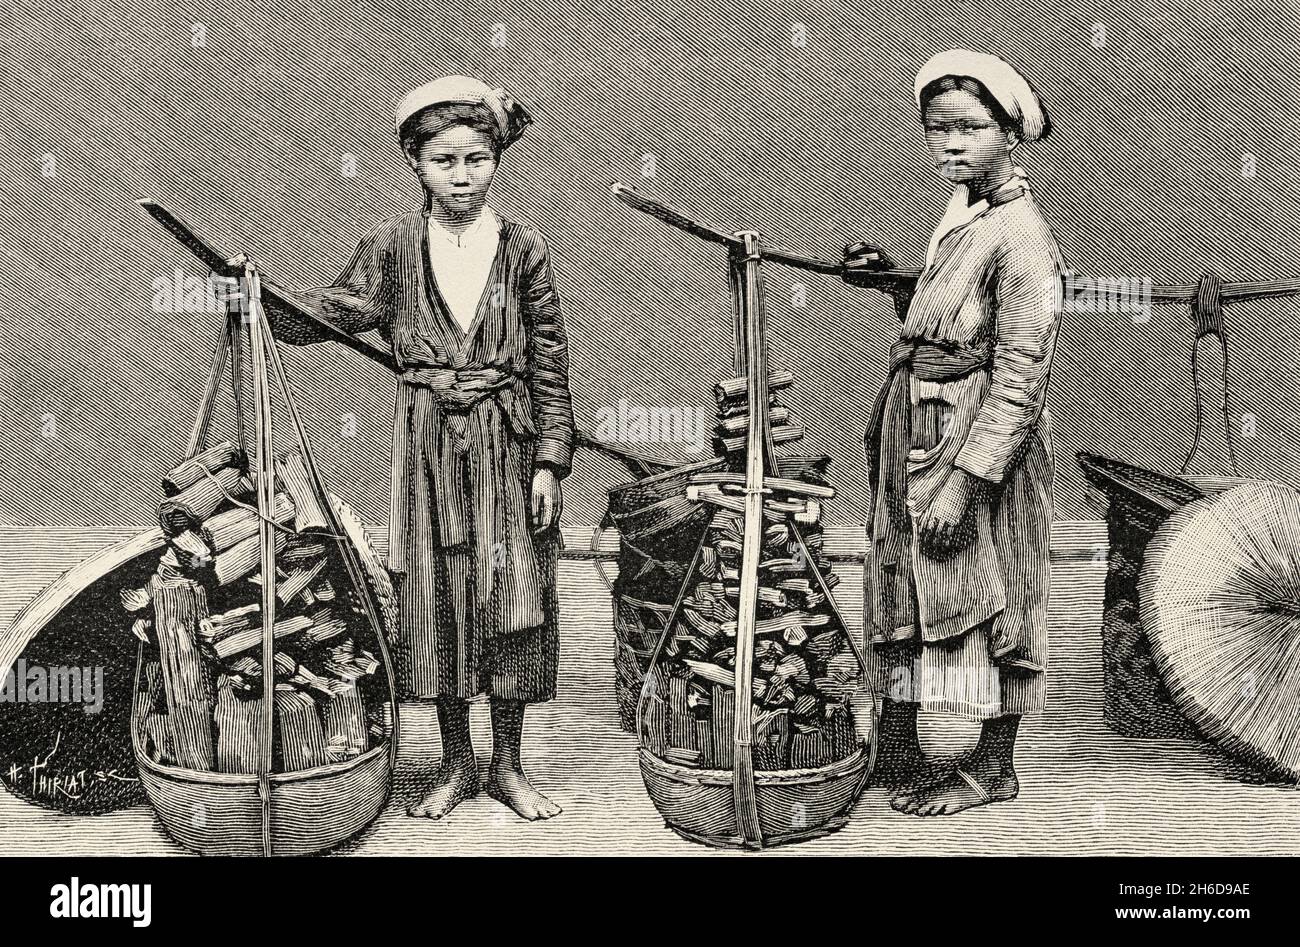 Jeunes femmes vendant du charbon de bois, Vietnam.Asie.Illustration gravée du XIXe Siècle Une campagne à Tonkin de Charles Edouard Hocquard du Tour du monde 1889 Banque D'Images